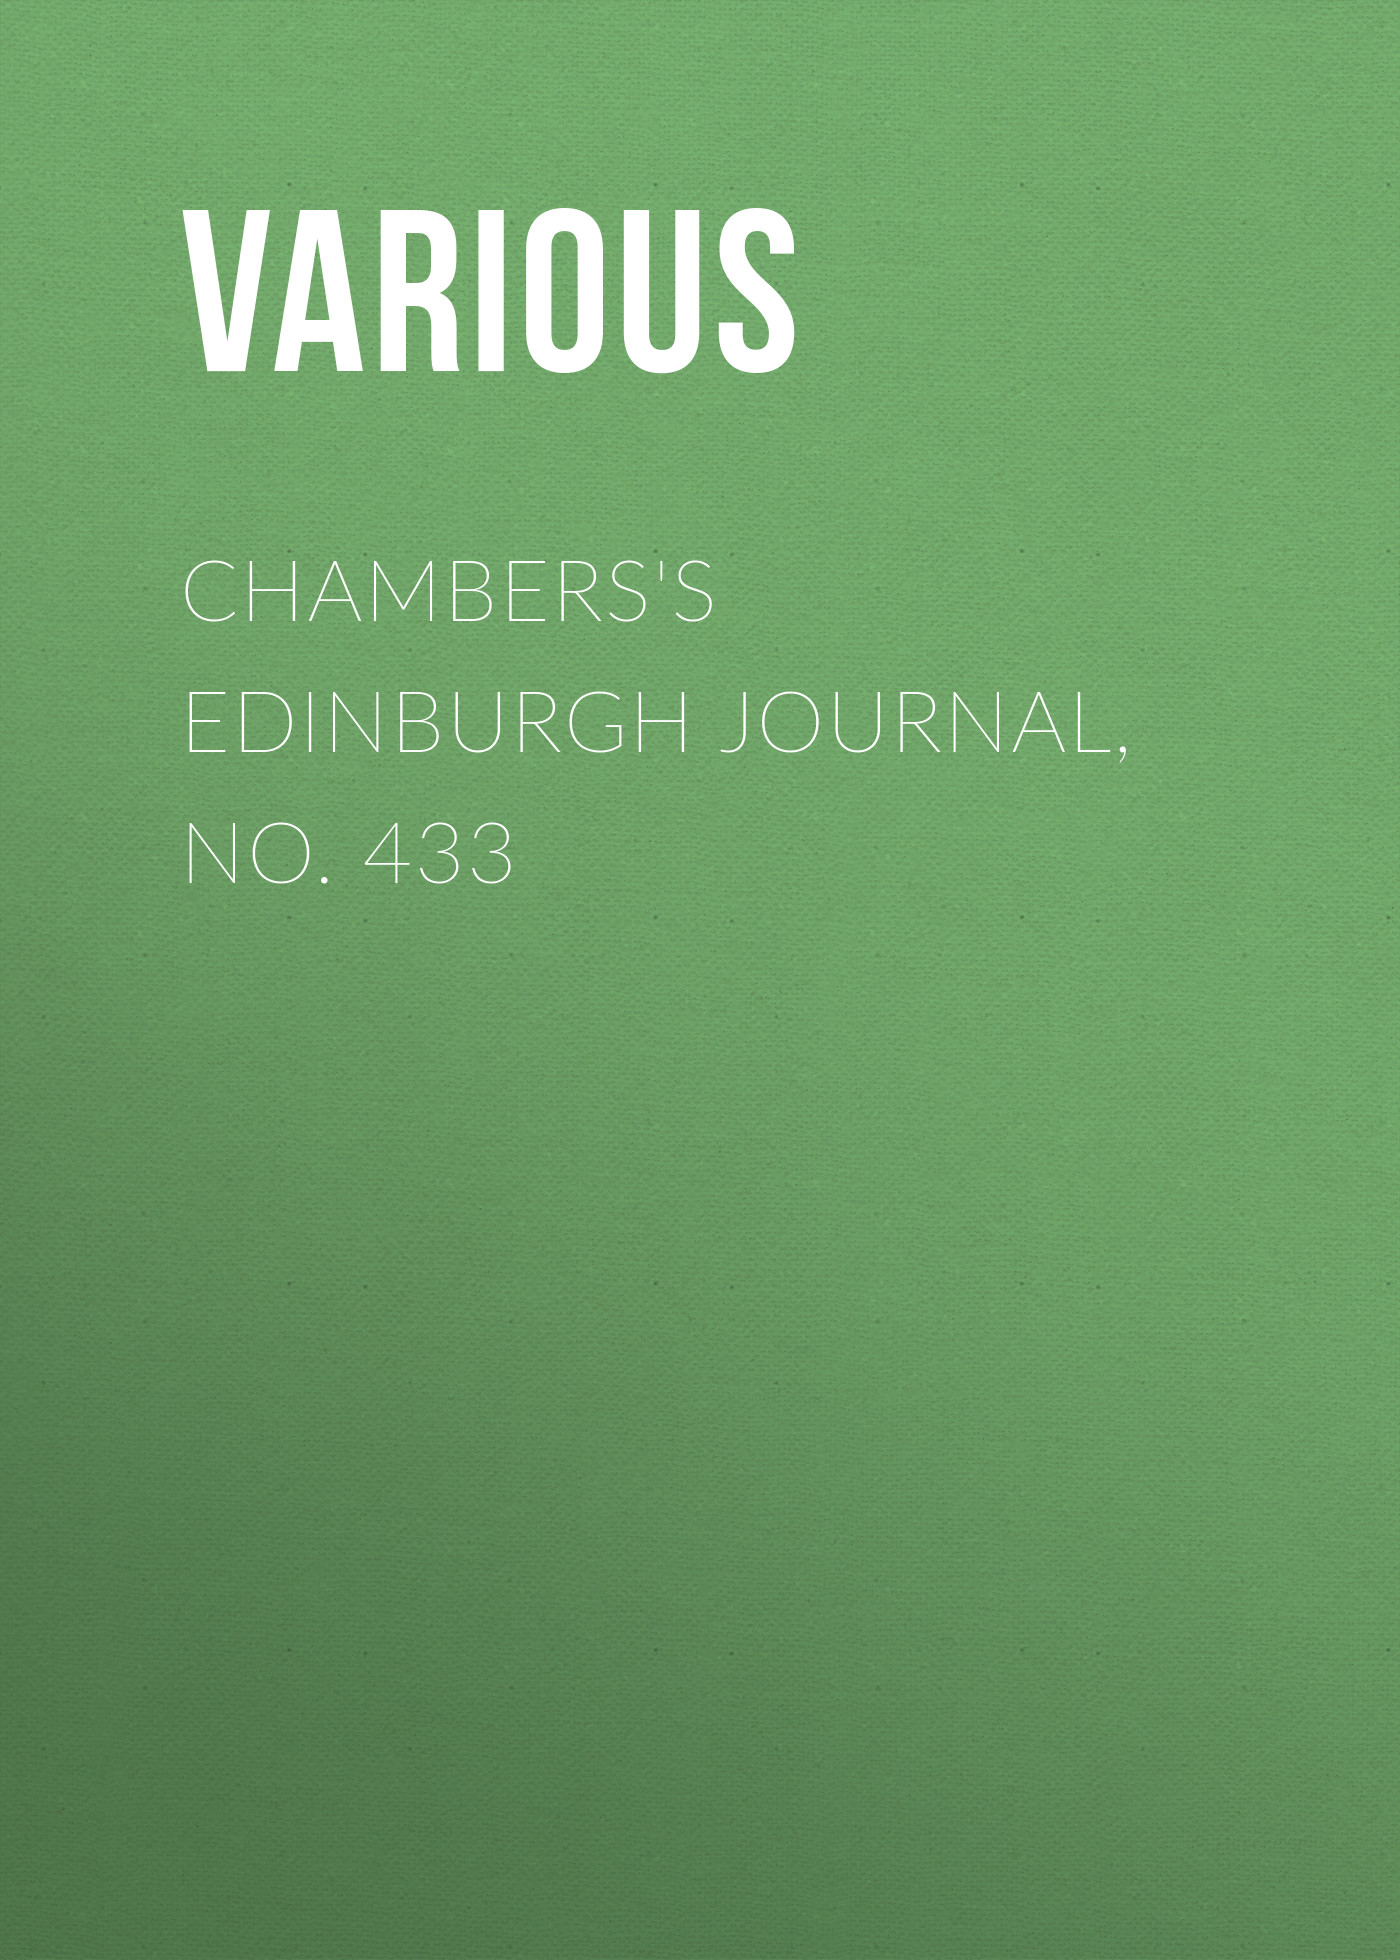 Книга Chambers's Edinburgh Journal, No. 433 из серии , созданная  Various, может относится к жанру Зарубежная старинная литература, Журналы, Зарубежная образовательная литература. Стоимость электронной книги Chambers's Edinburgh Journal, No. 433 с идентификатором 35492223 составляет 0 руб.